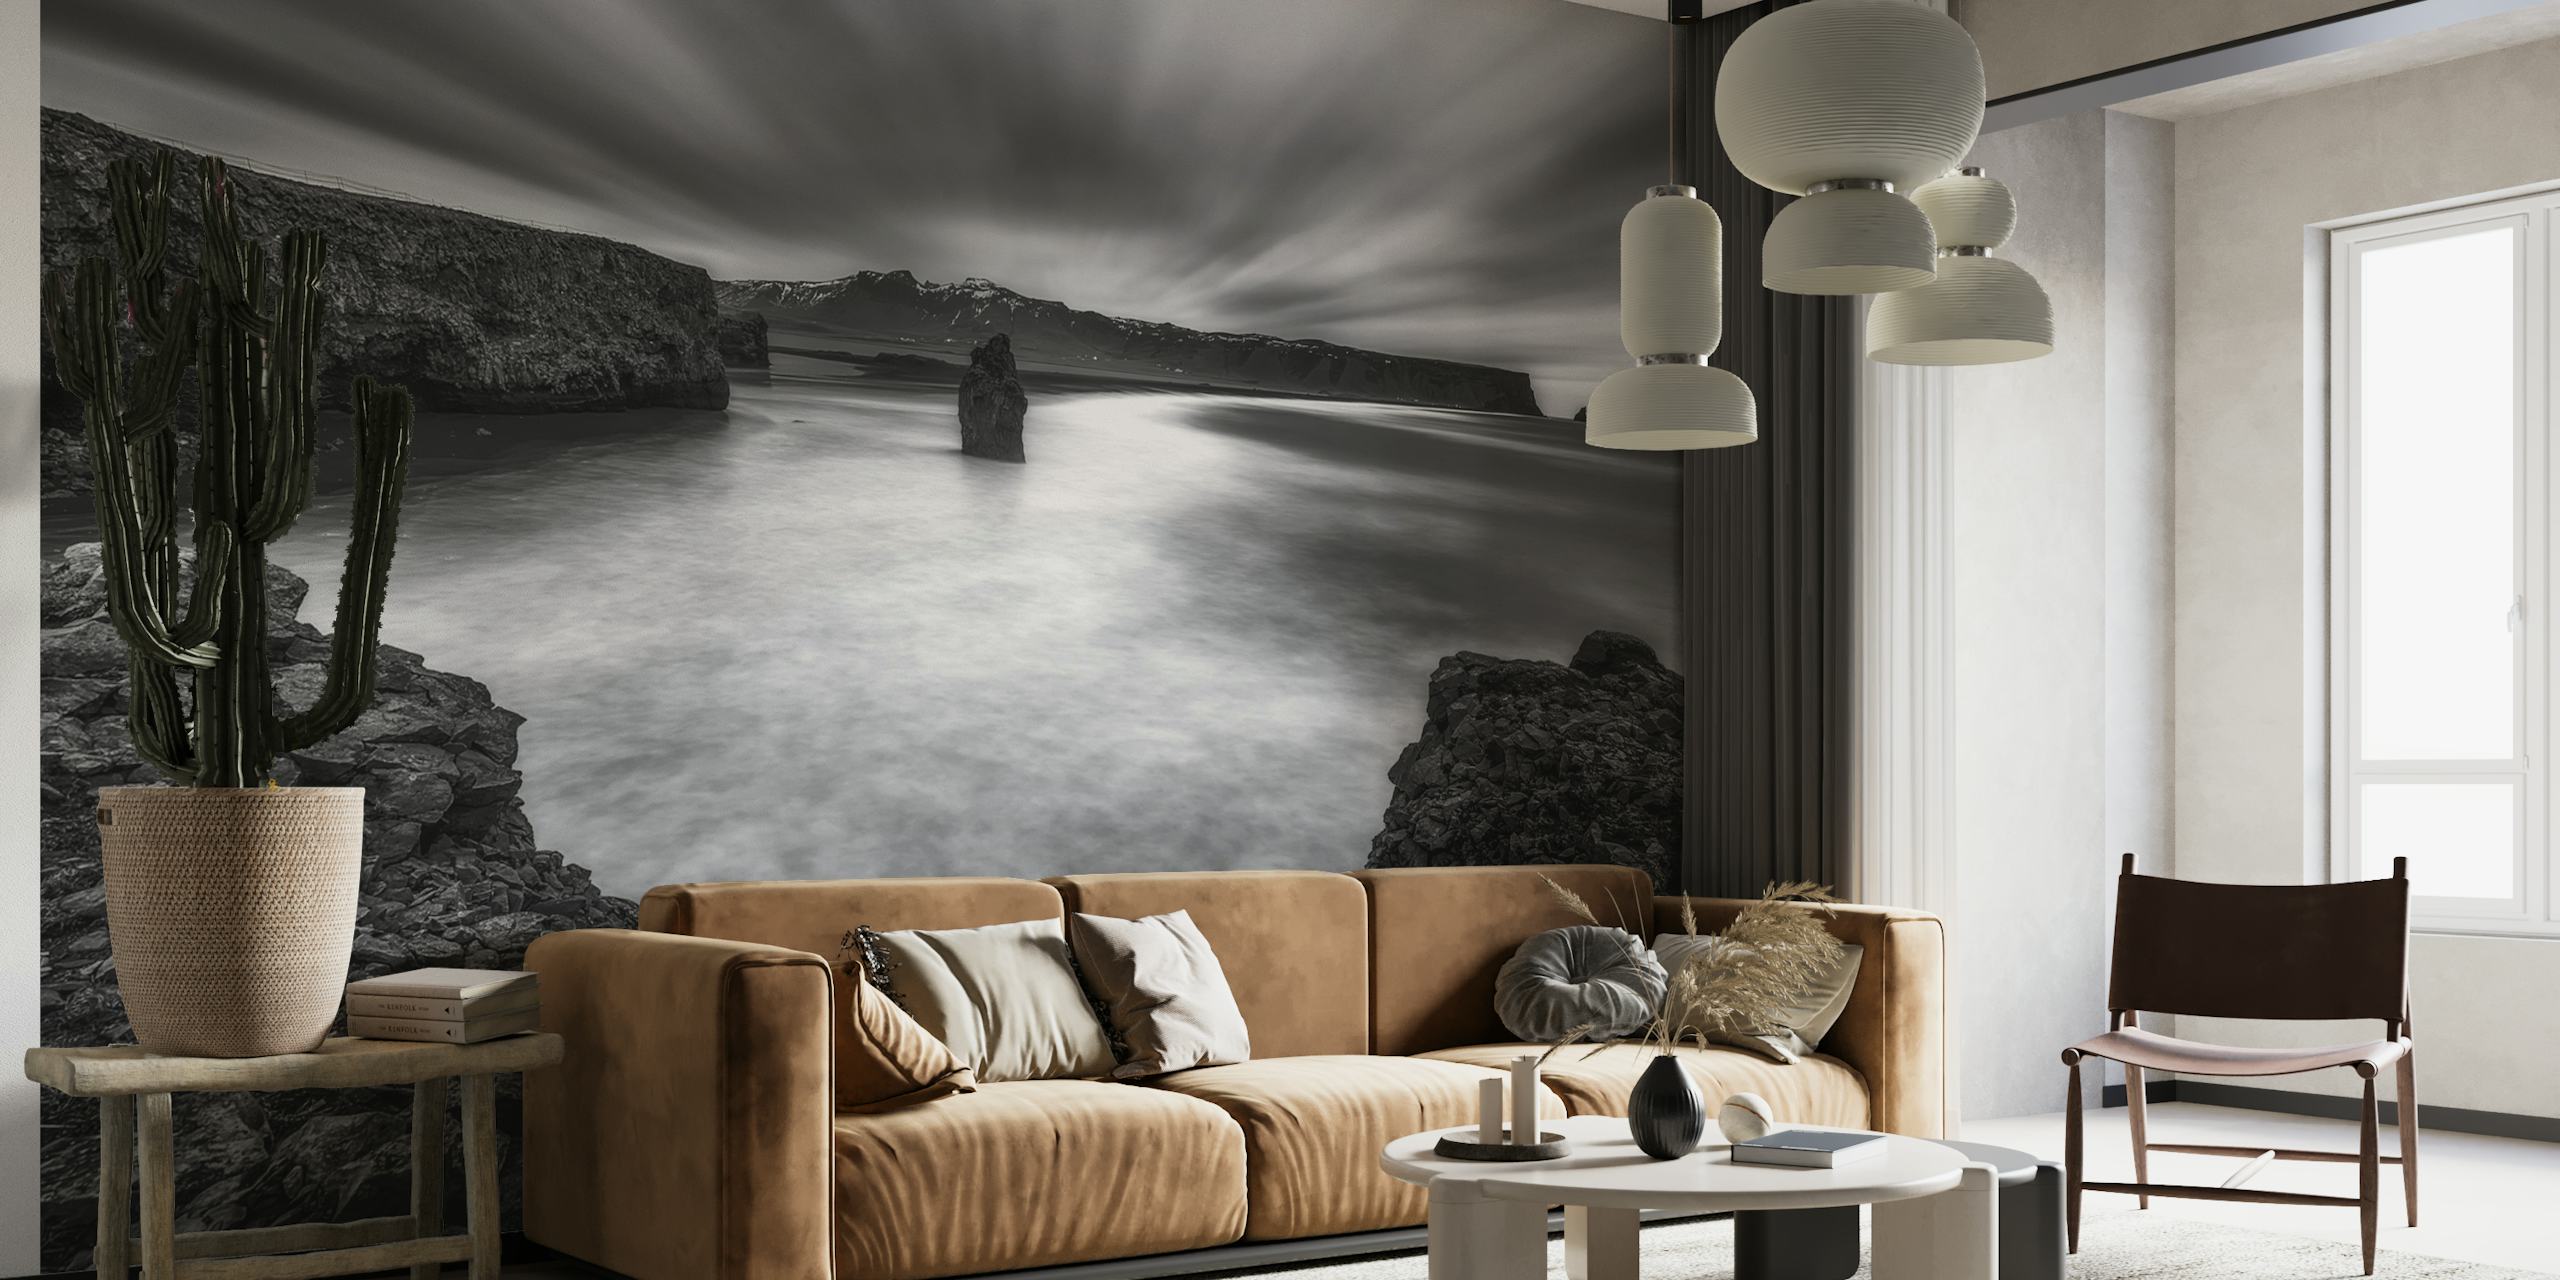 Mural en blanco y negro que representa nubes dinámicas y una tranquila masa de agua junto a un acantilado